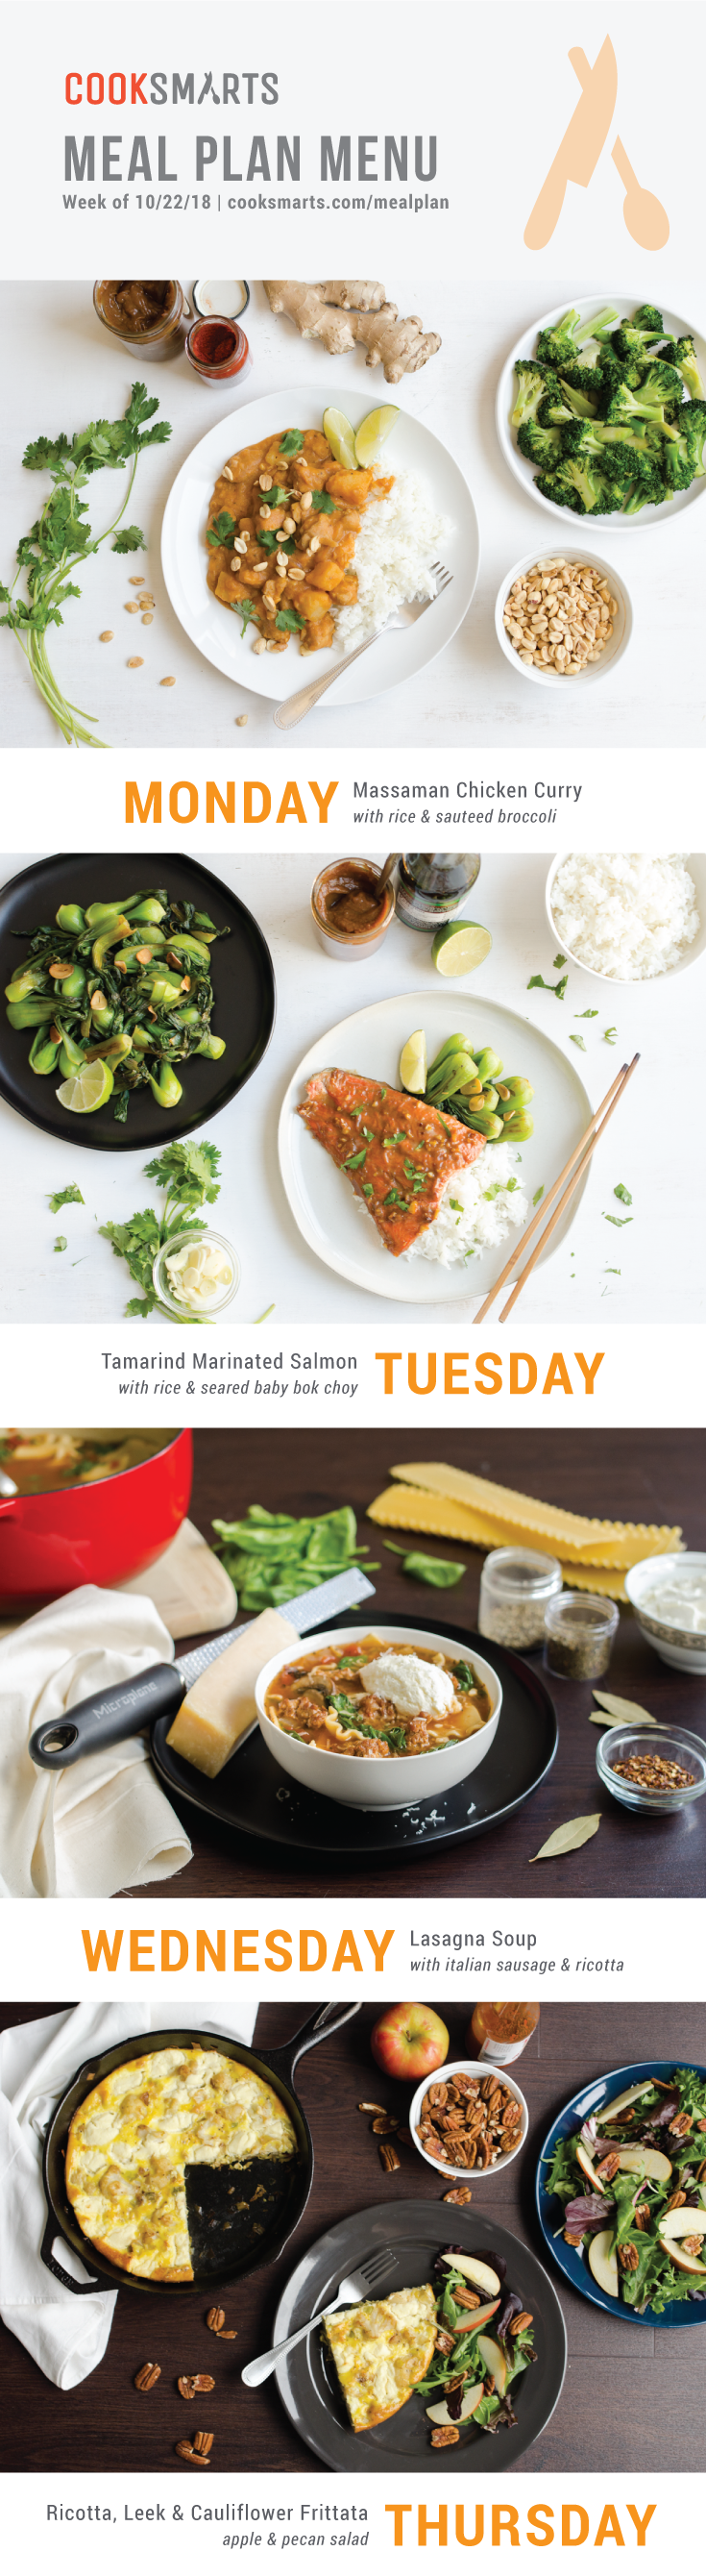 Weekly Meal Planner | Menu for Week of 10/22/18 via Cook Smarts